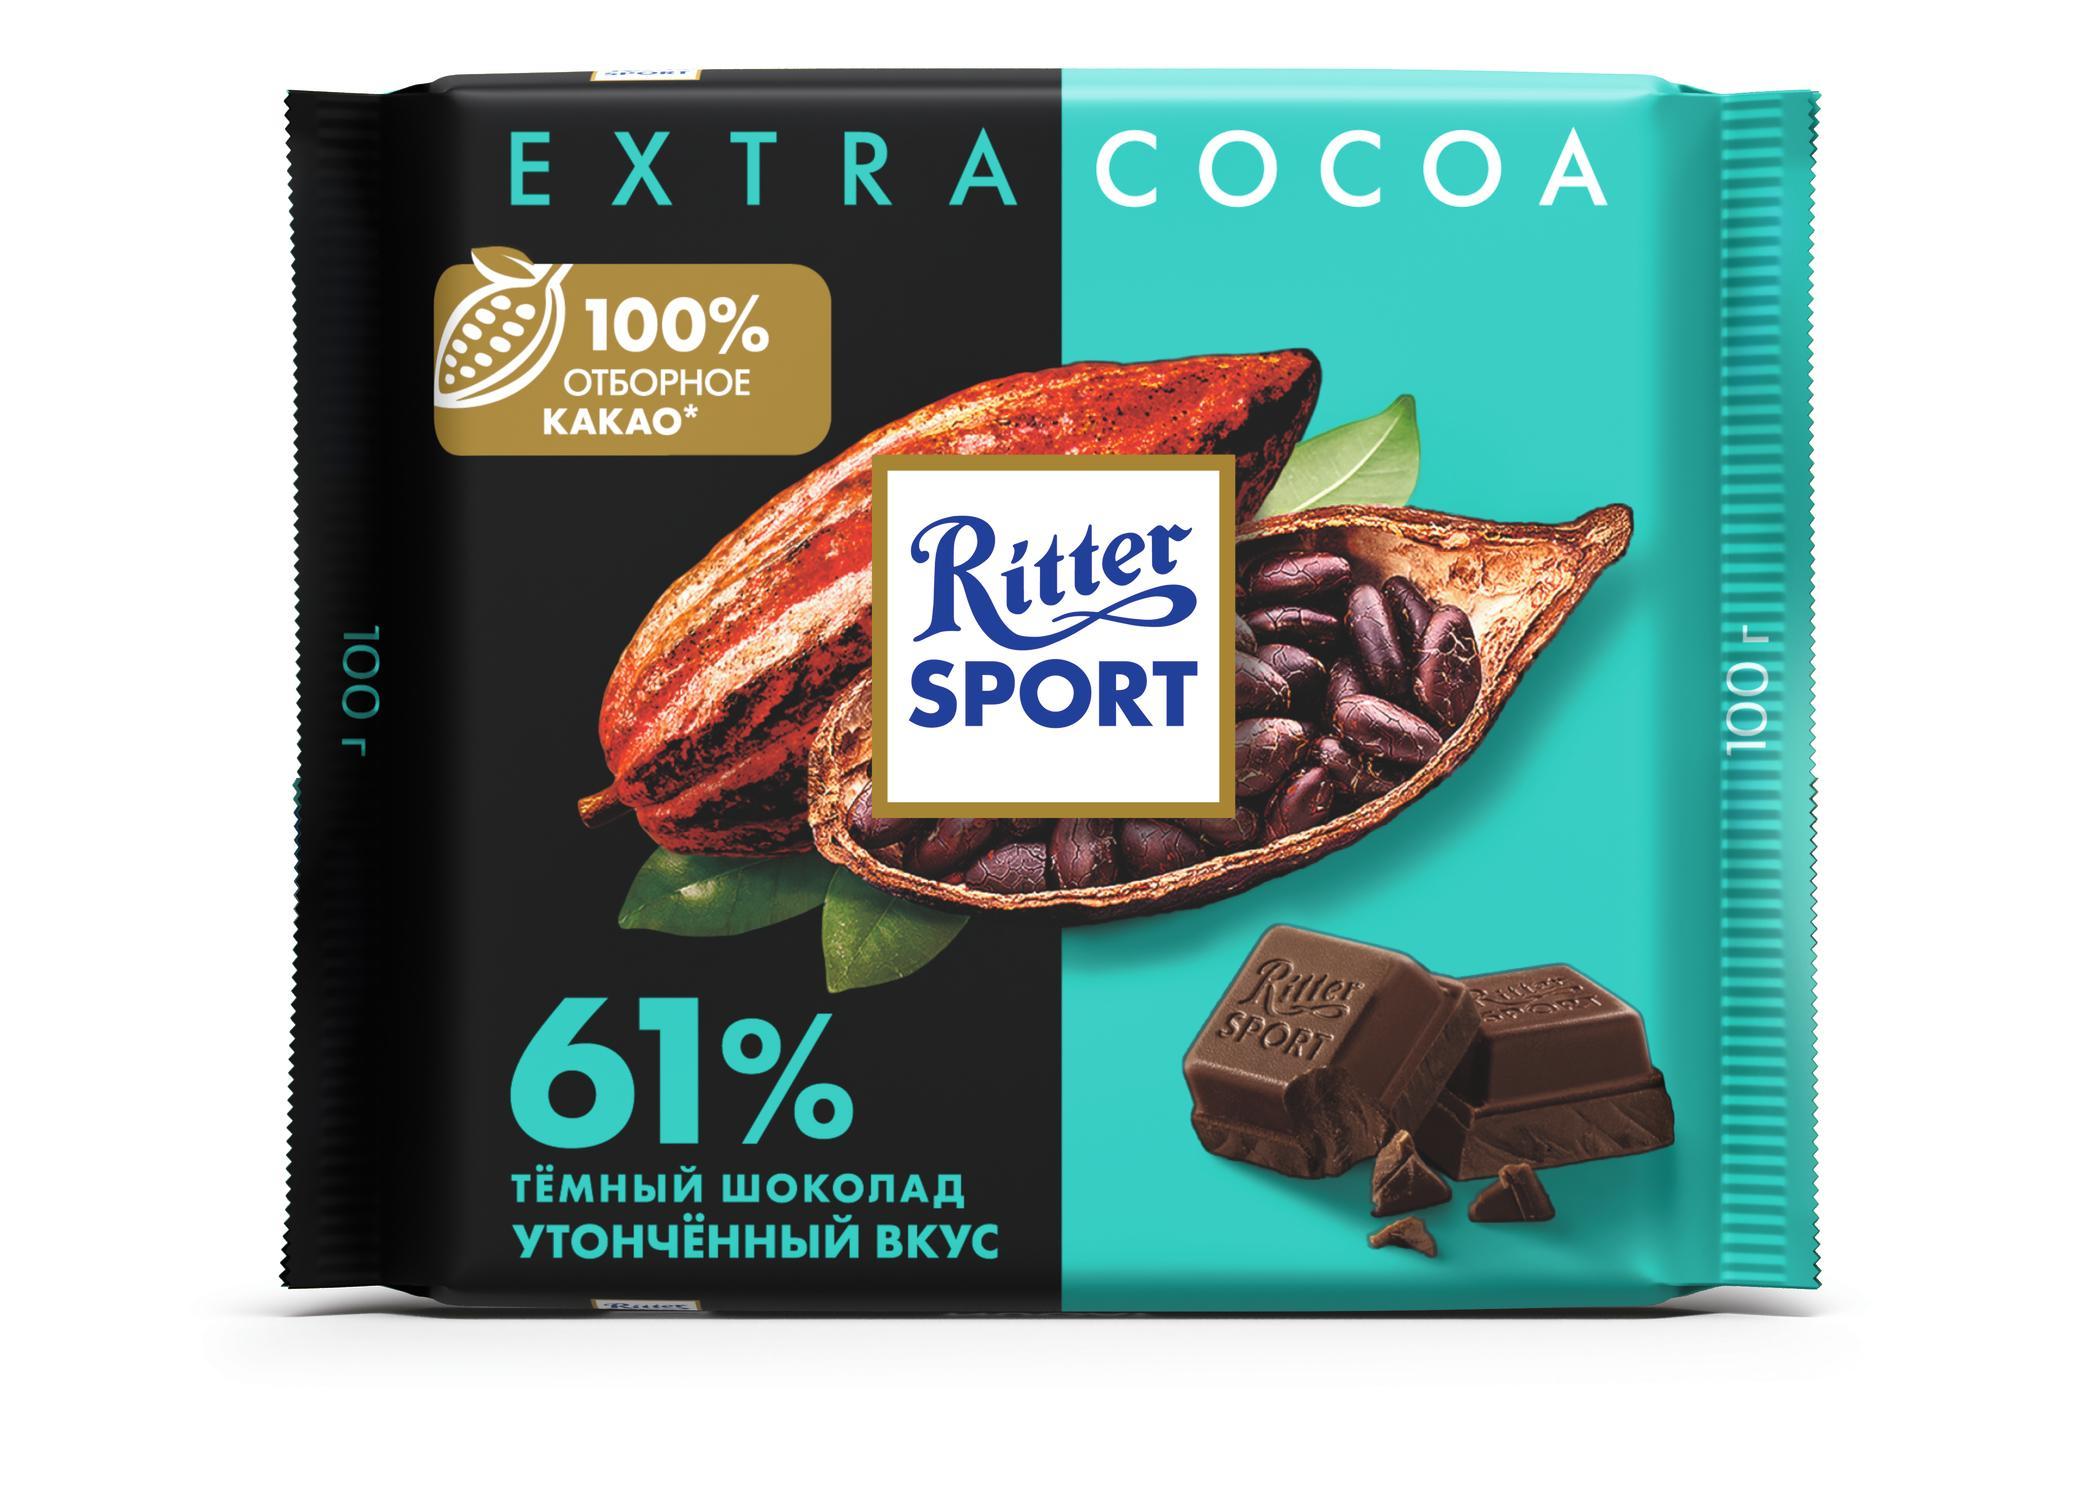 Шоколад Ritter Sport 61% какао темный с утонченным вкусом из Никарагуа 100 гр., флоу-пак